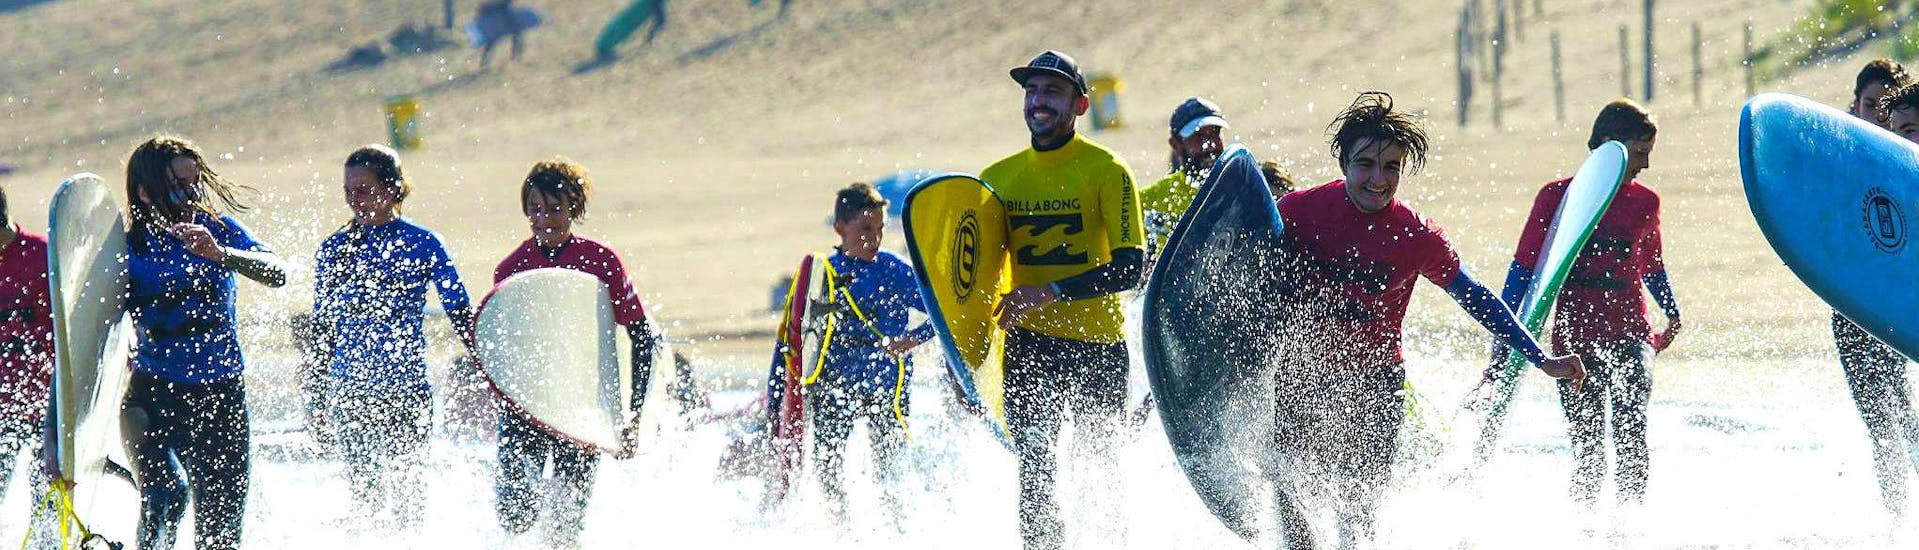 Lezioni di surf da 9 anni per principianti.